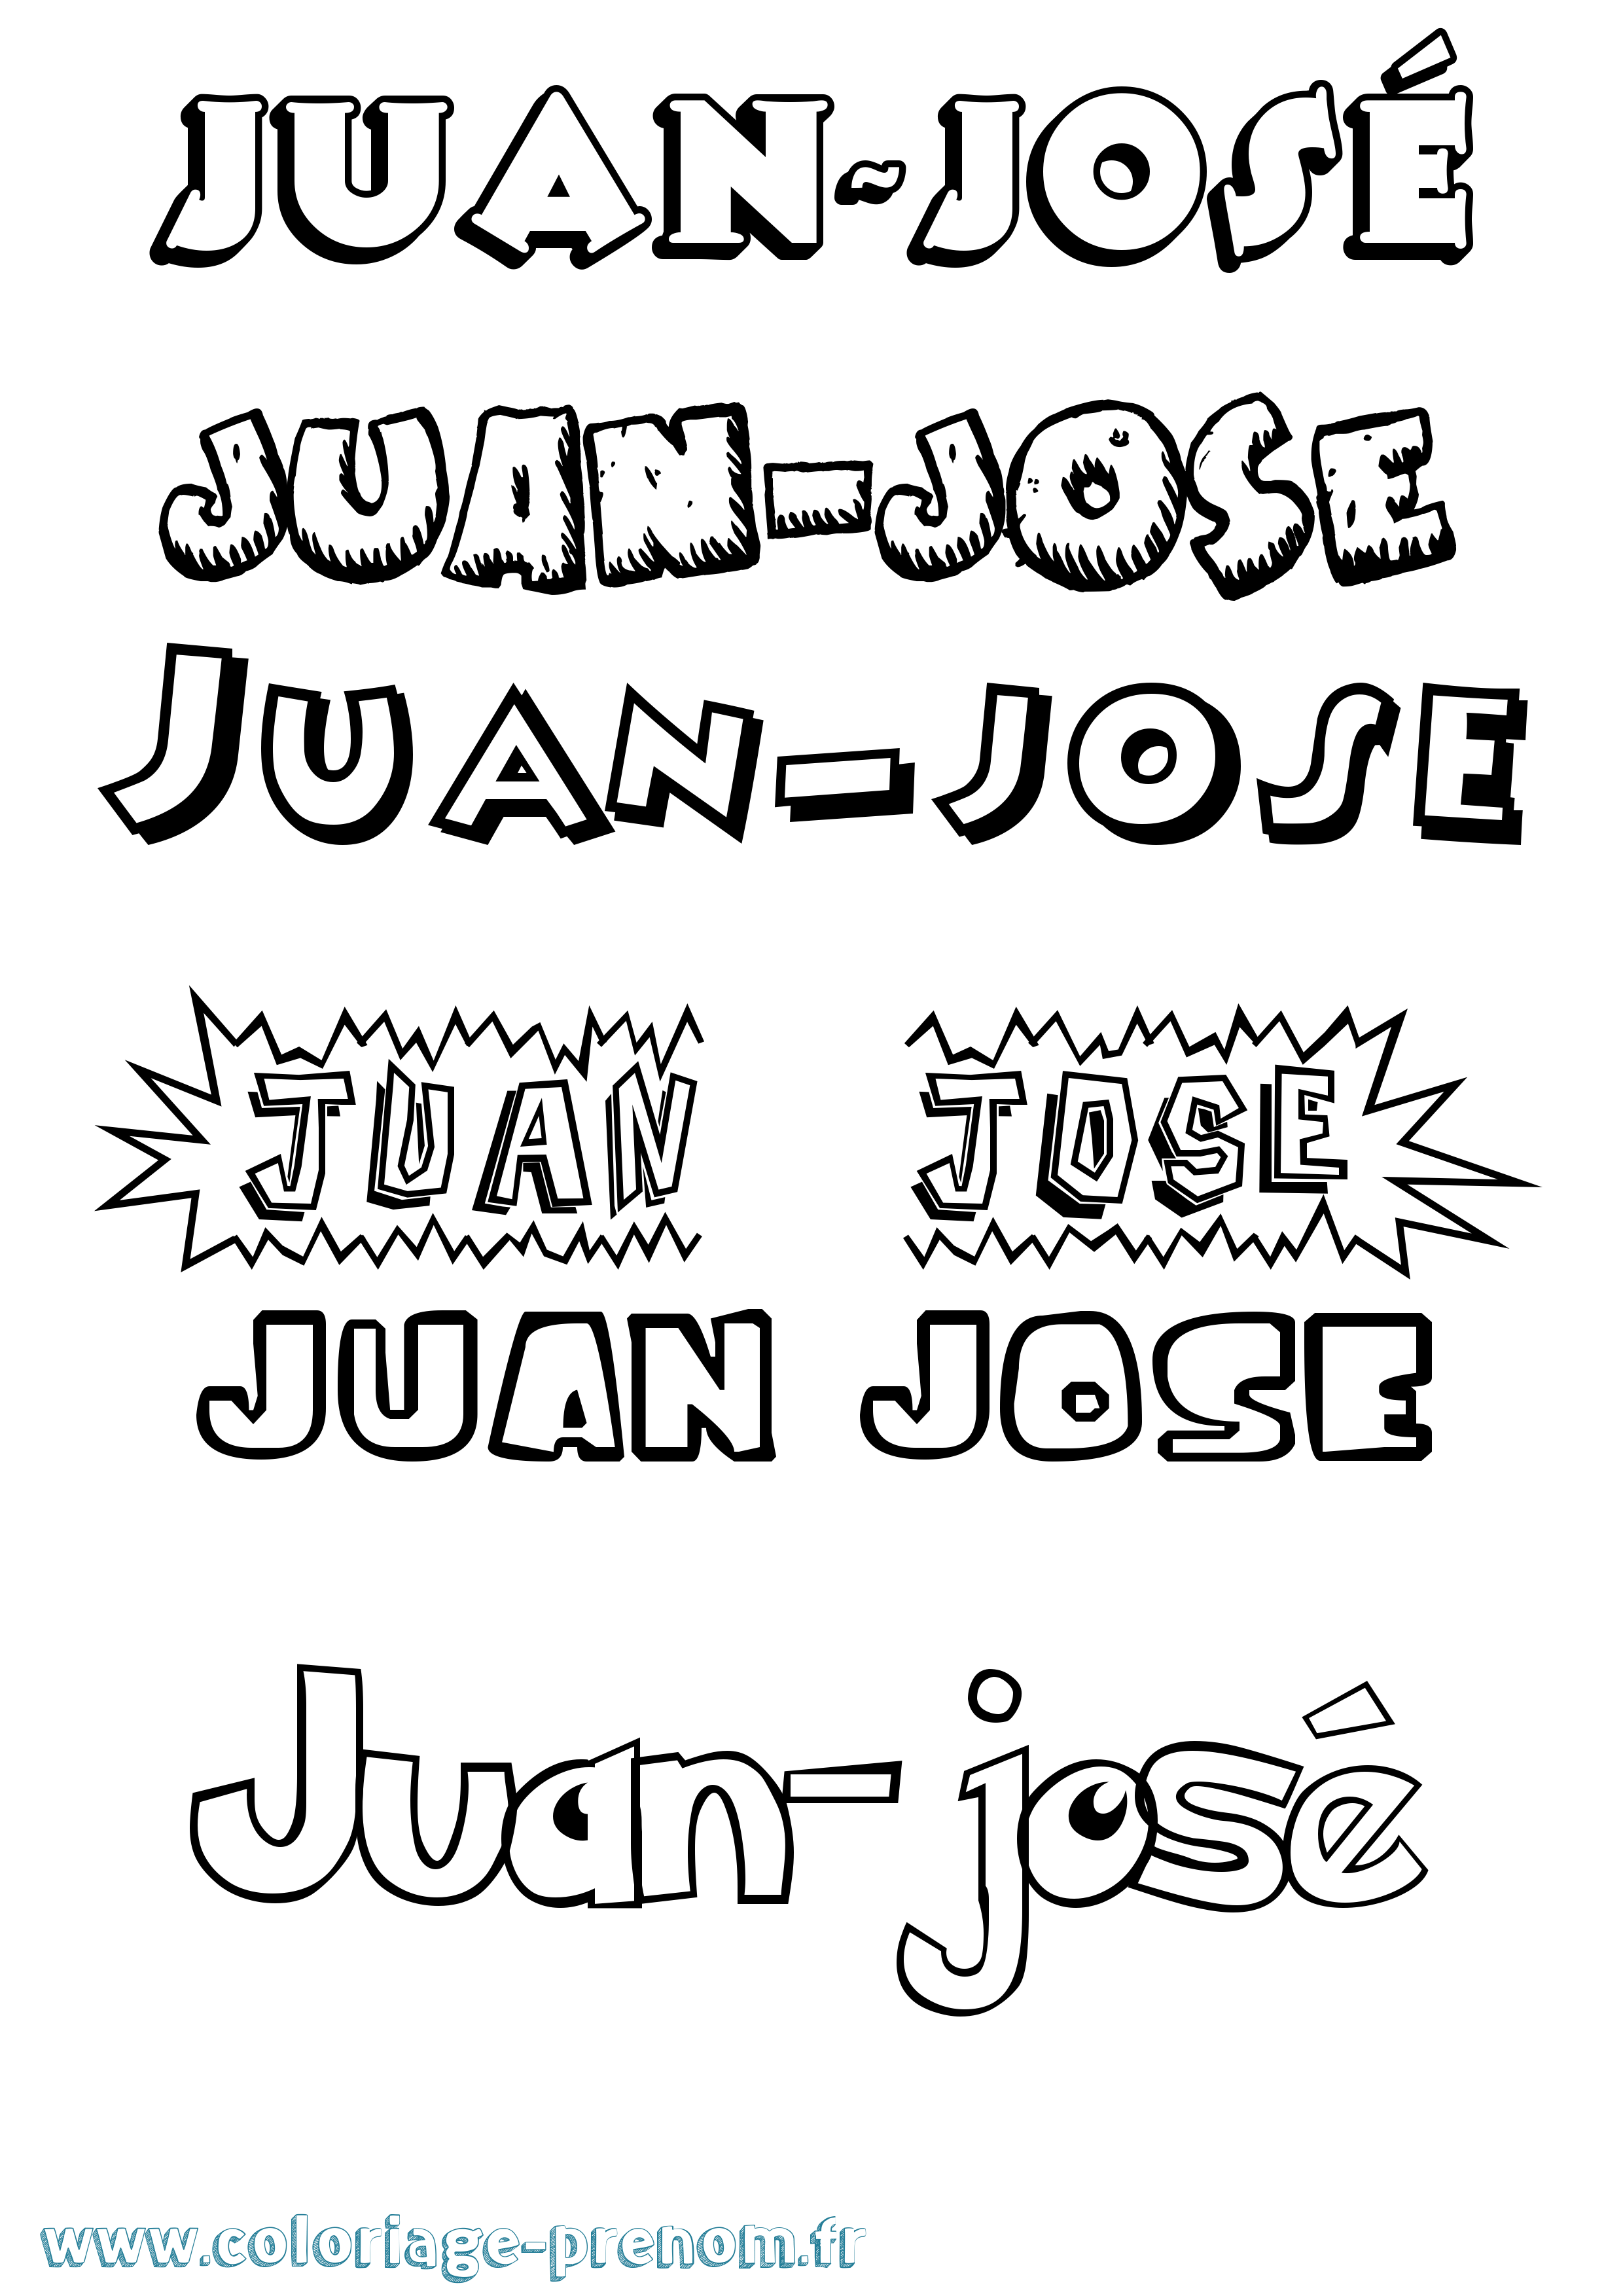 Coloriage prénom Juan-José Dessin Animé